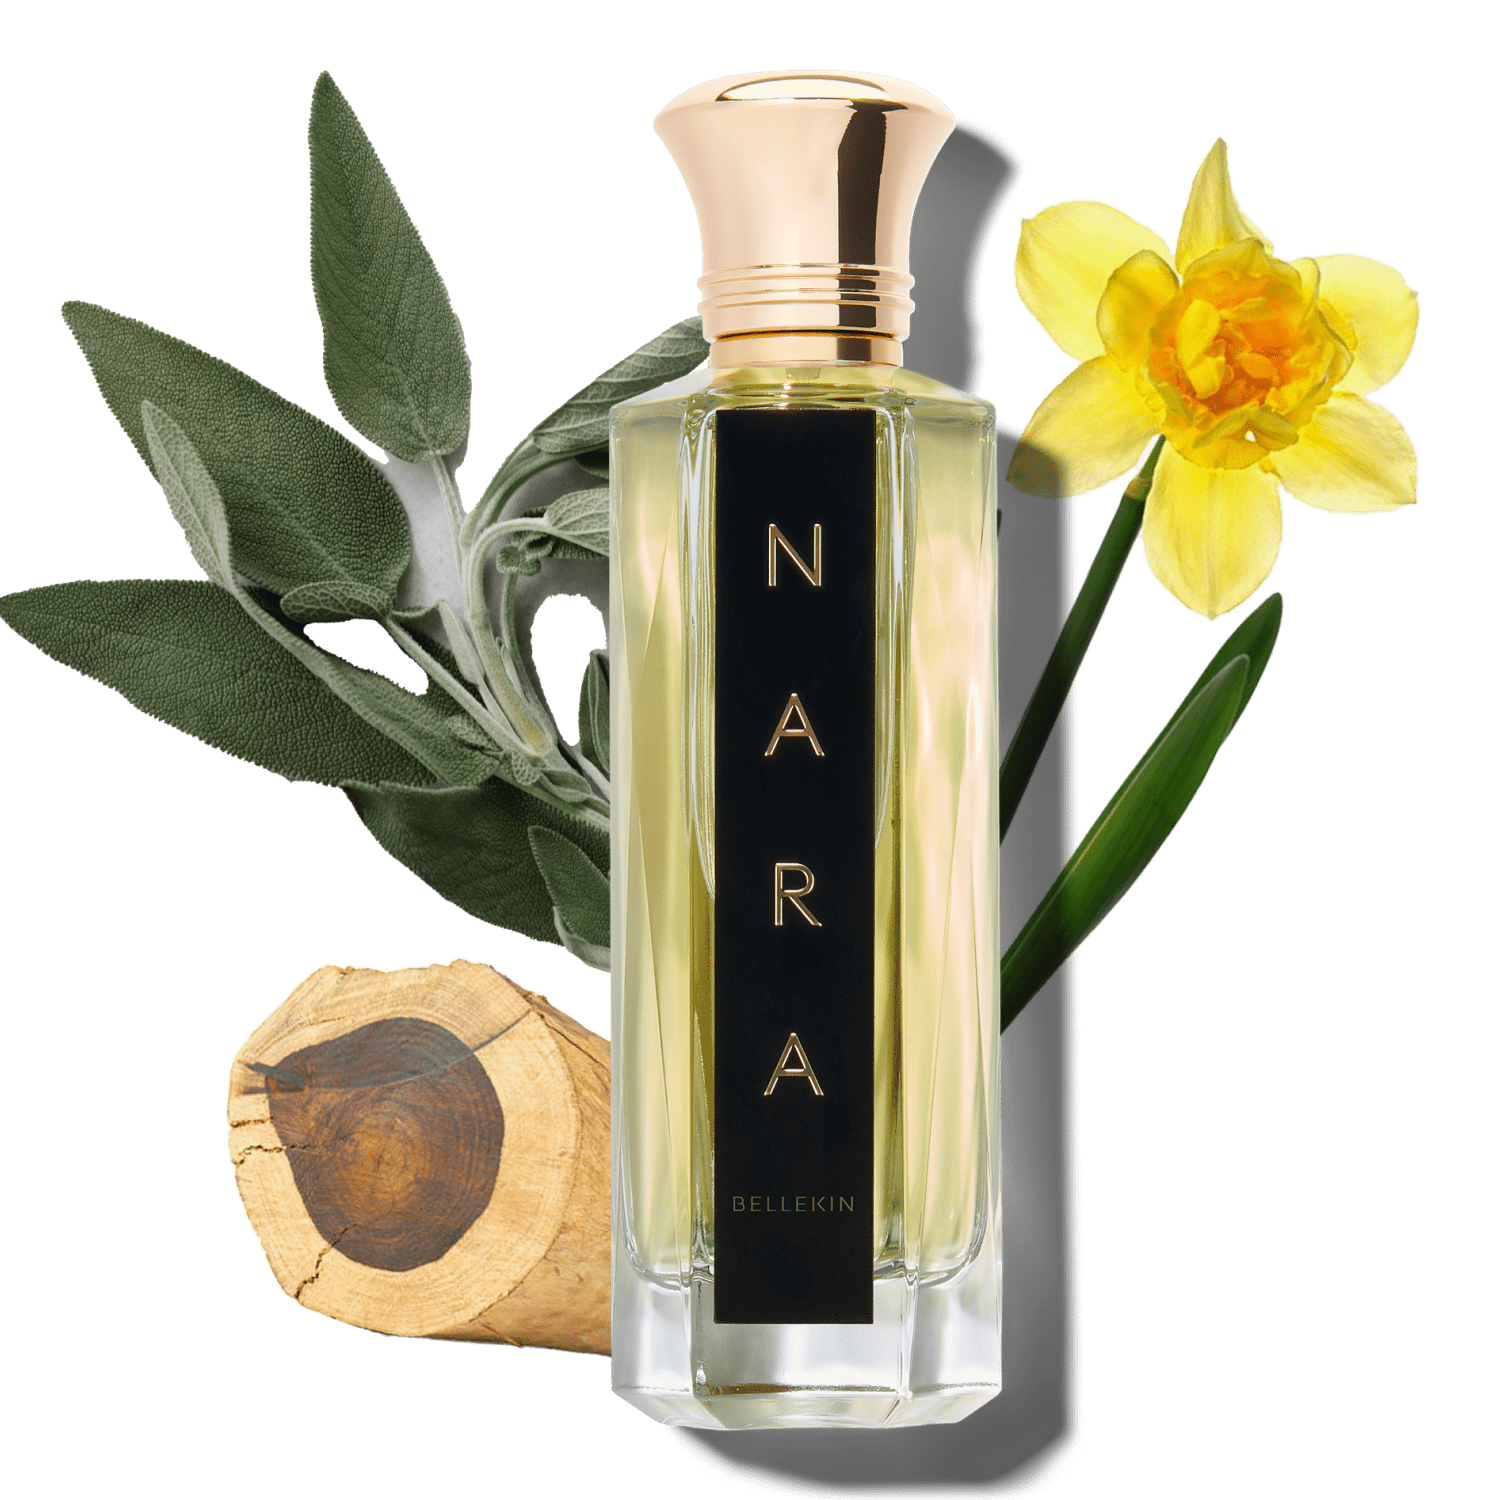 Bellekin.com Perfume NARA